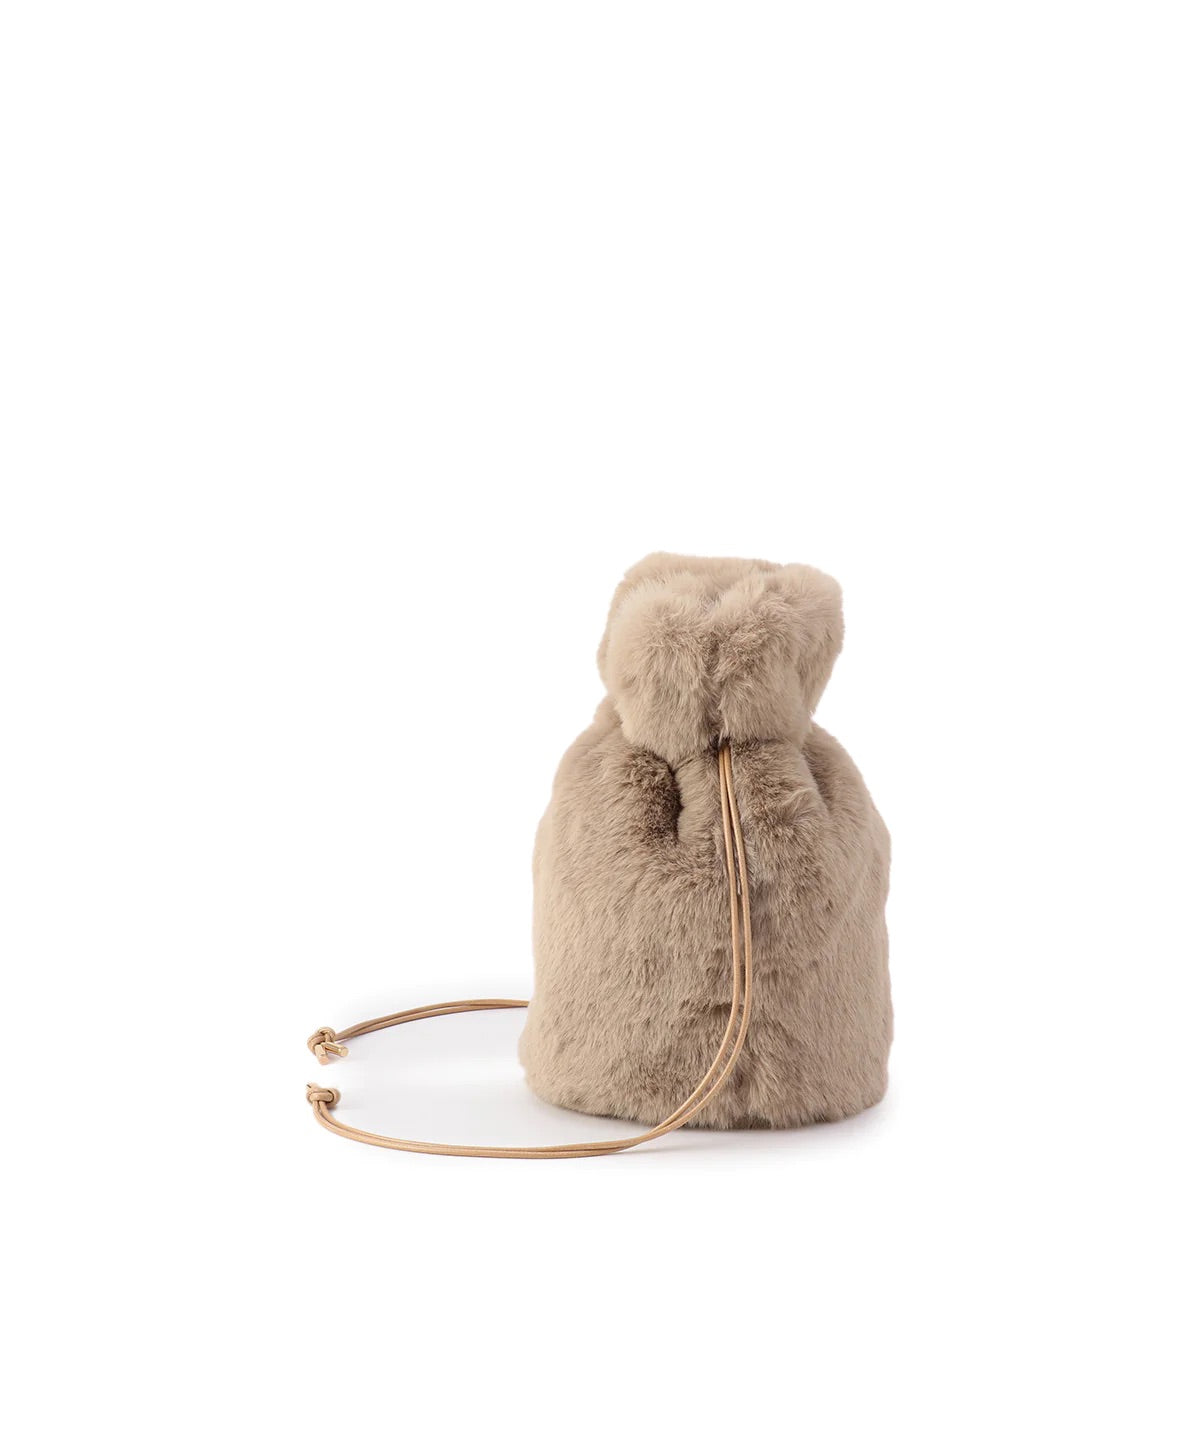 【期間限定ポーチS付き】Eco Fur Drawstring Bag (Small)BEIGE